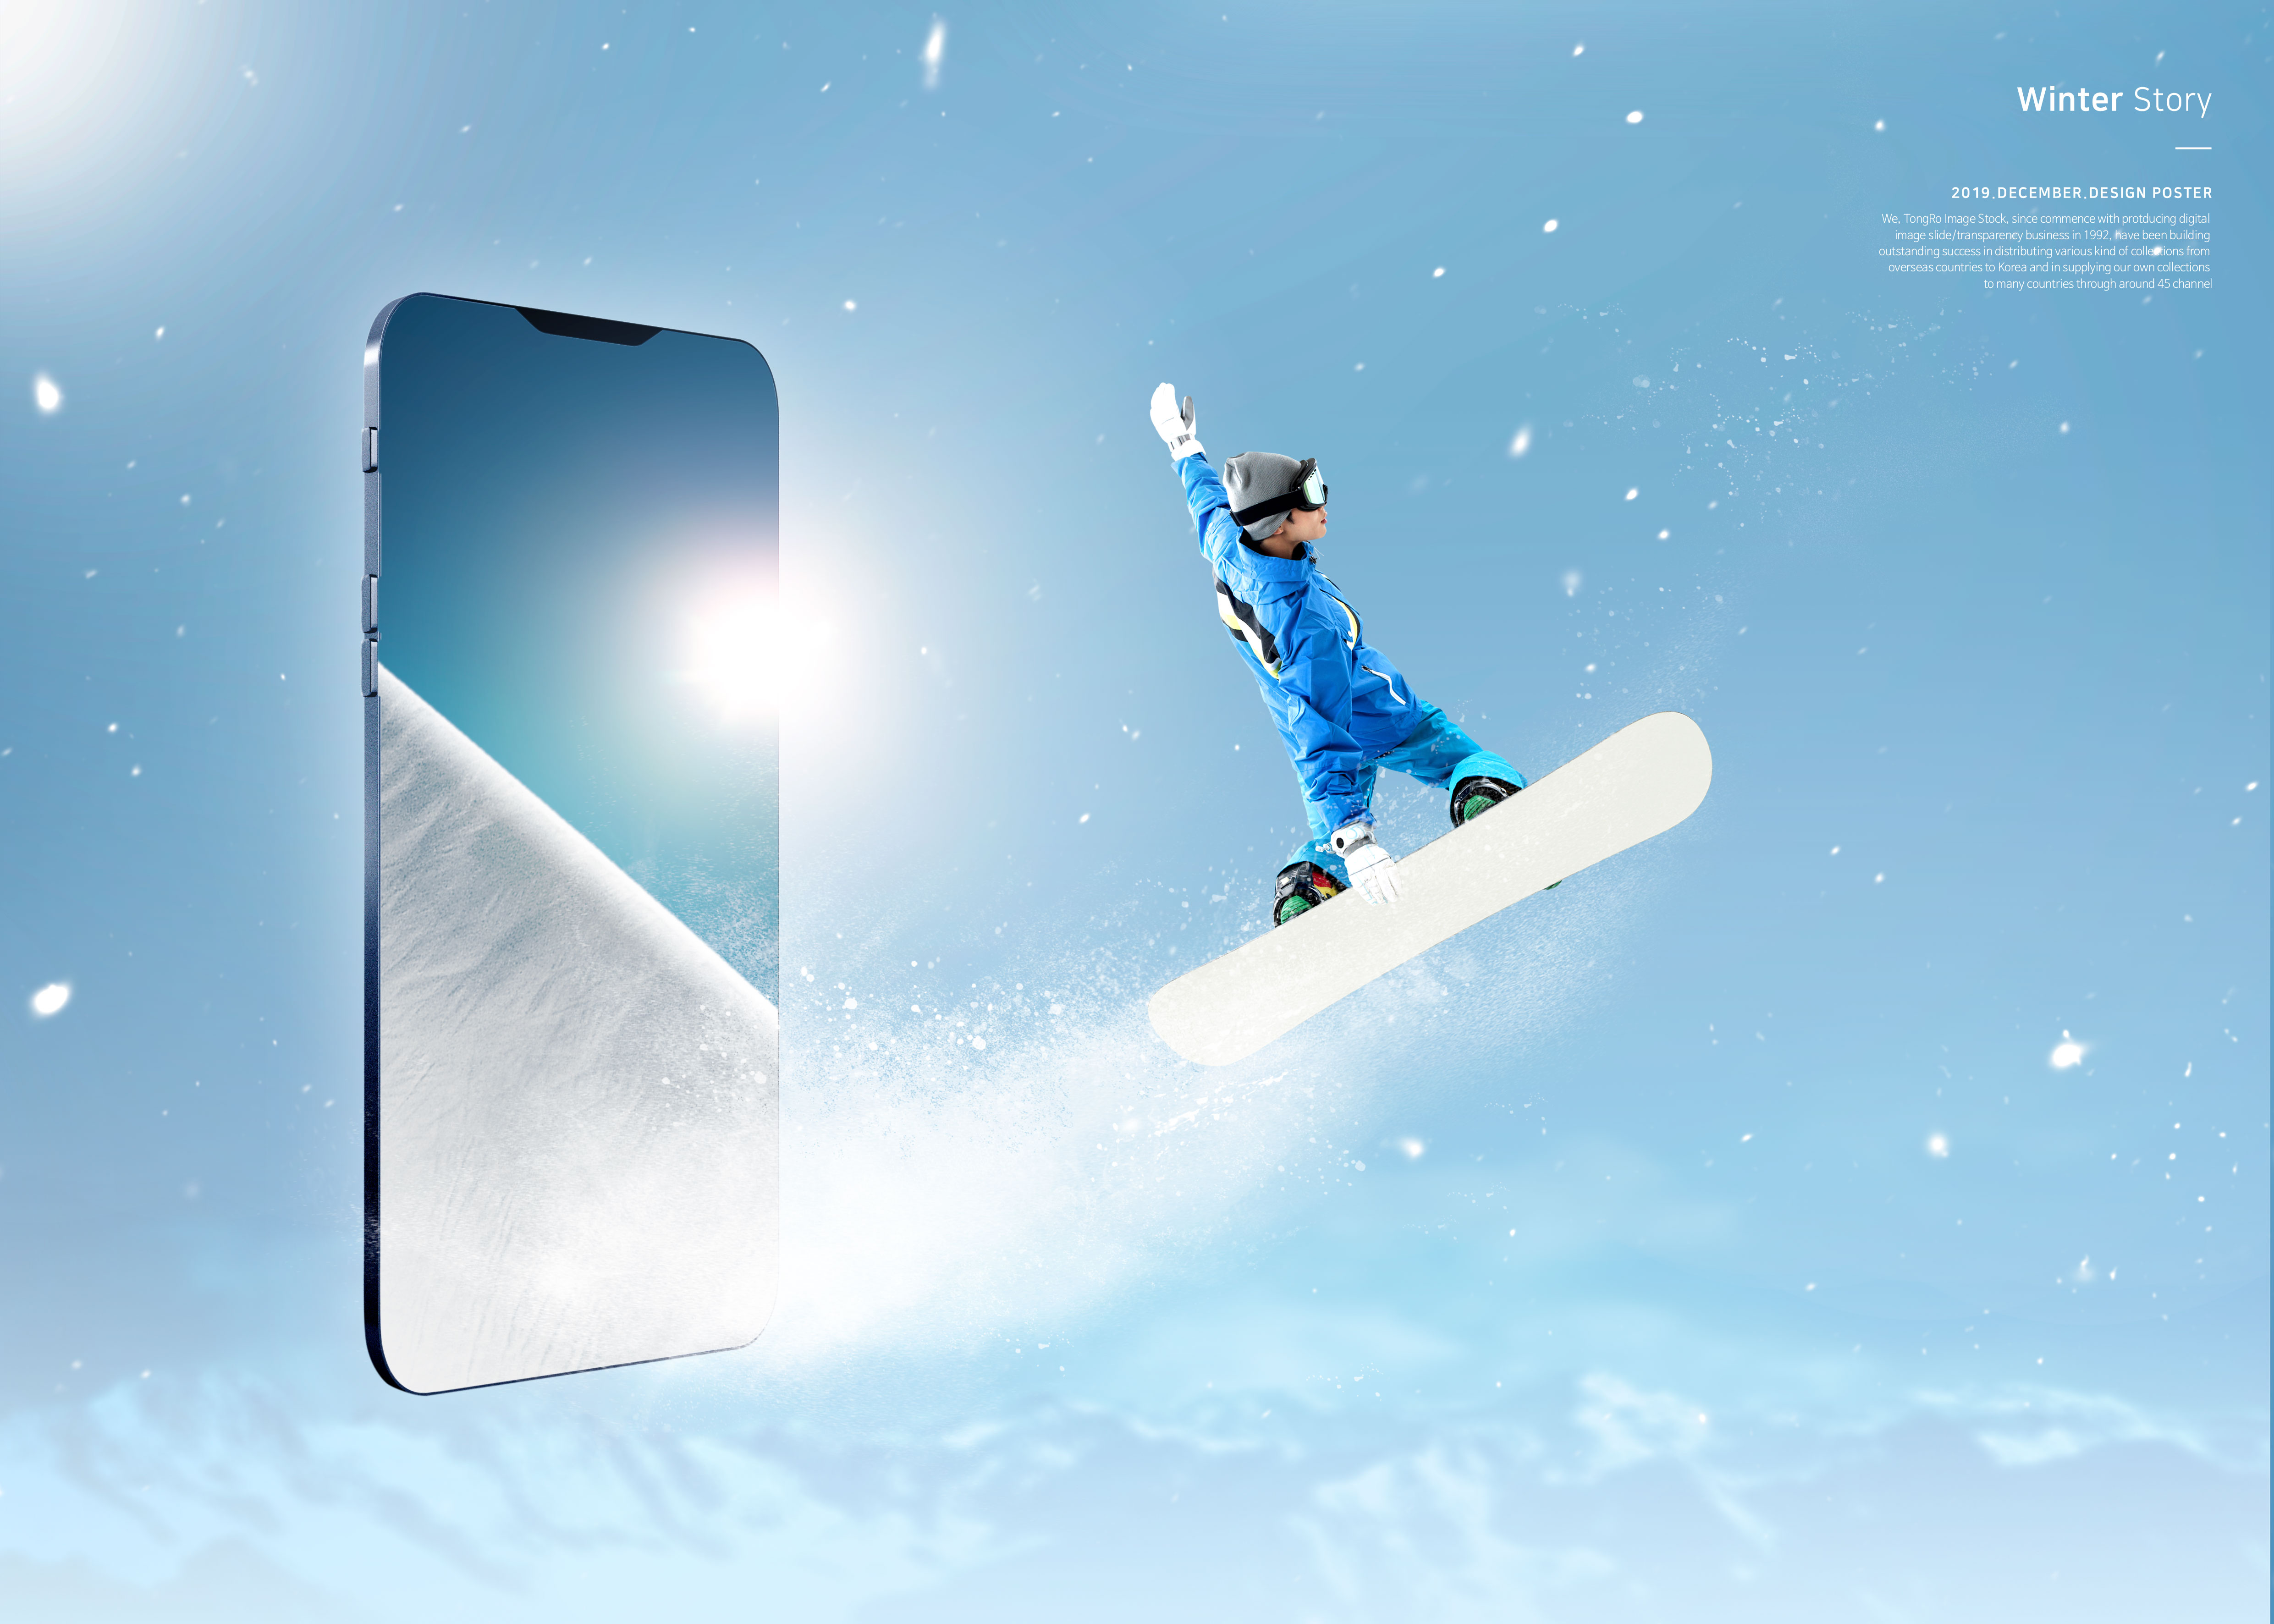 冬季故事雪山滑雪运动推广海报PSD素材素材库精选模板插图